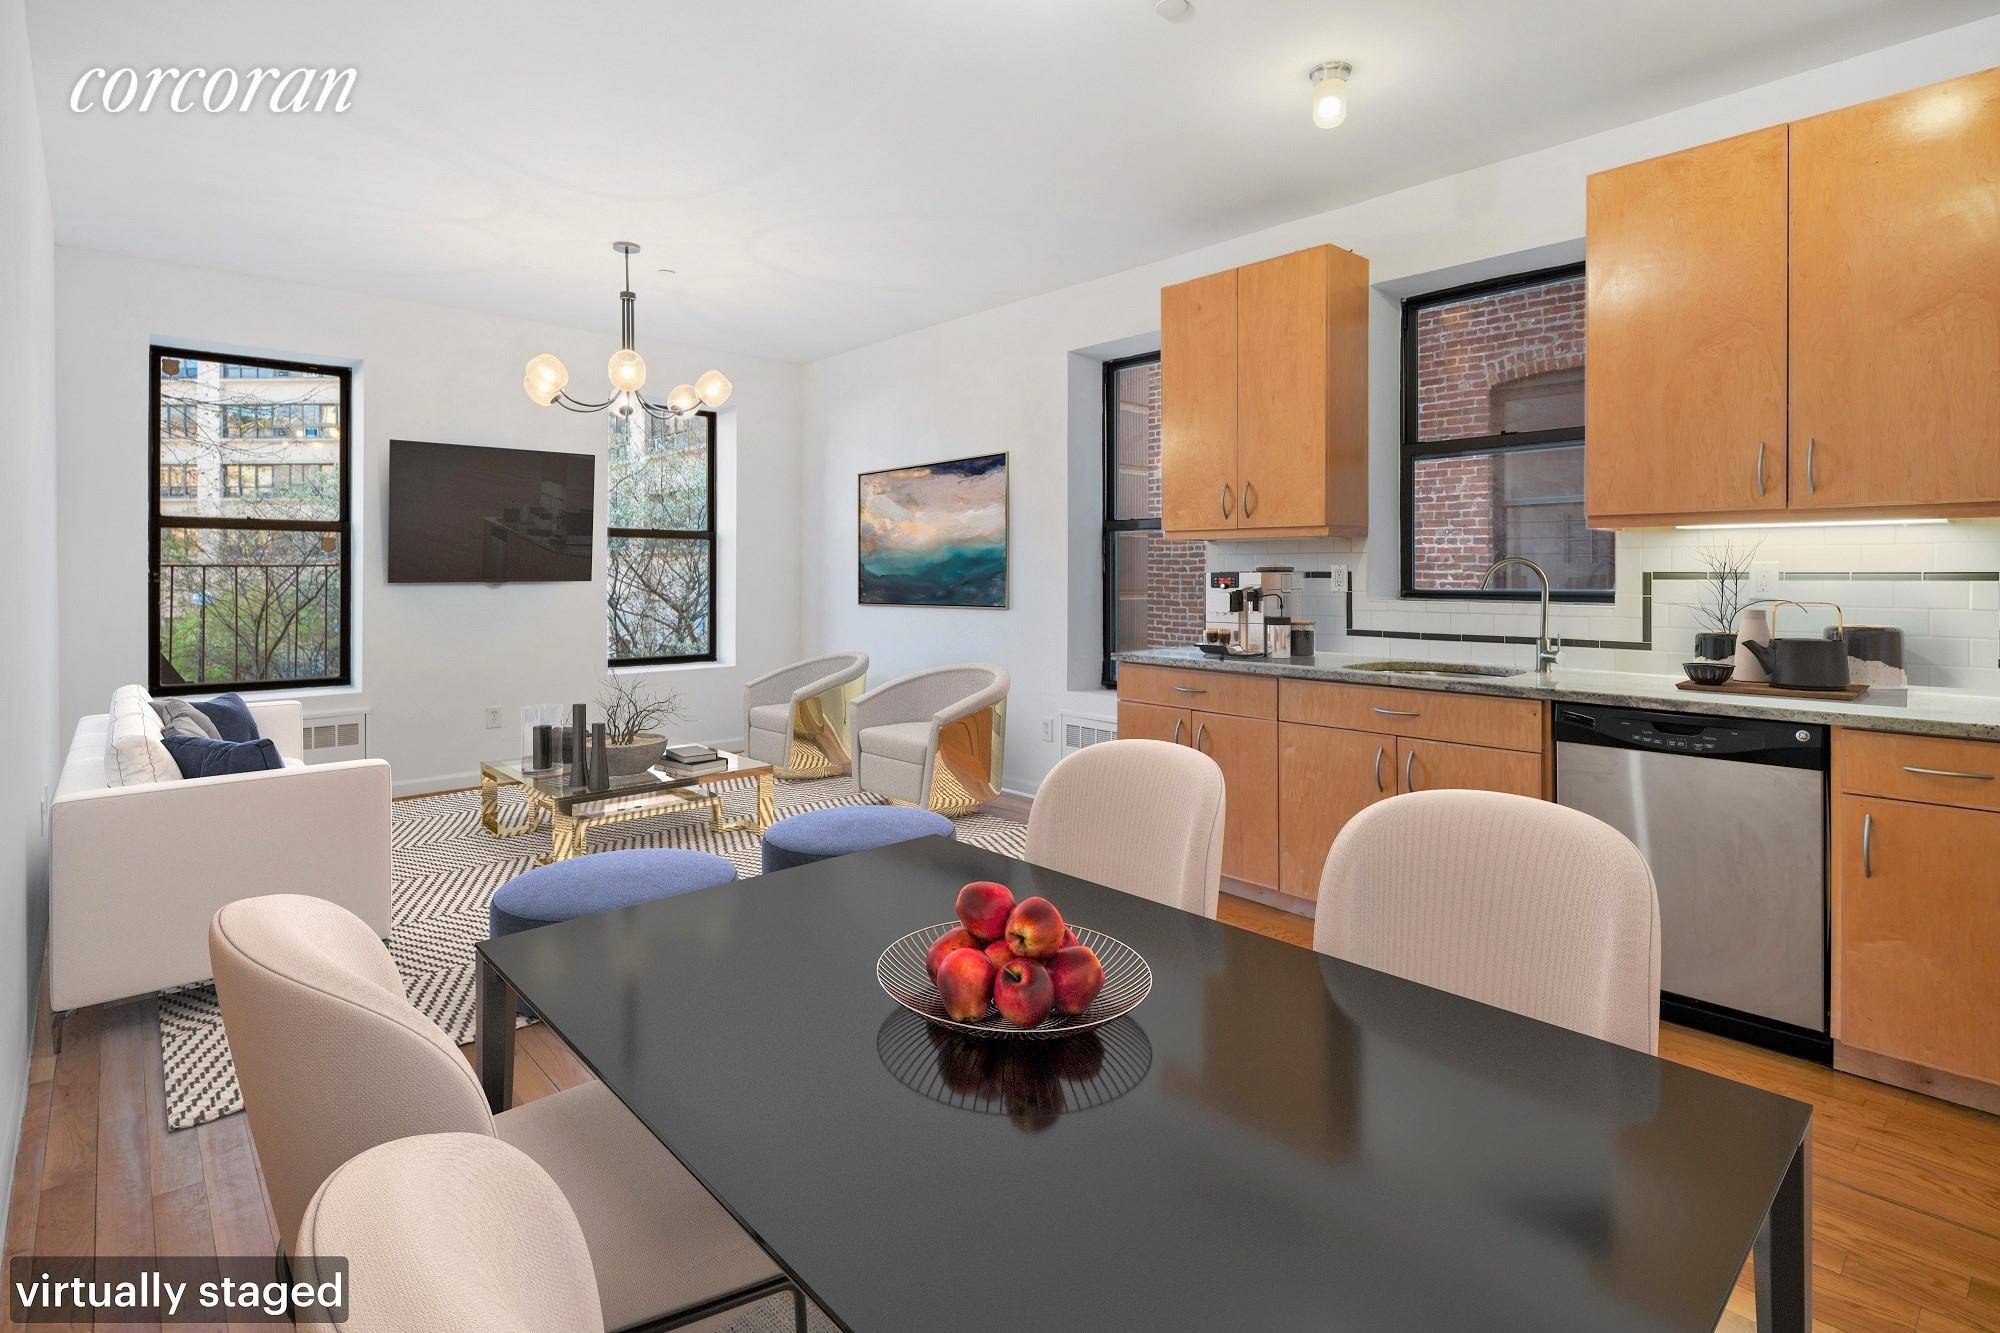 Welcome to the Parkview Condominium at 250 Manhattan Avenue, apartment 3C.